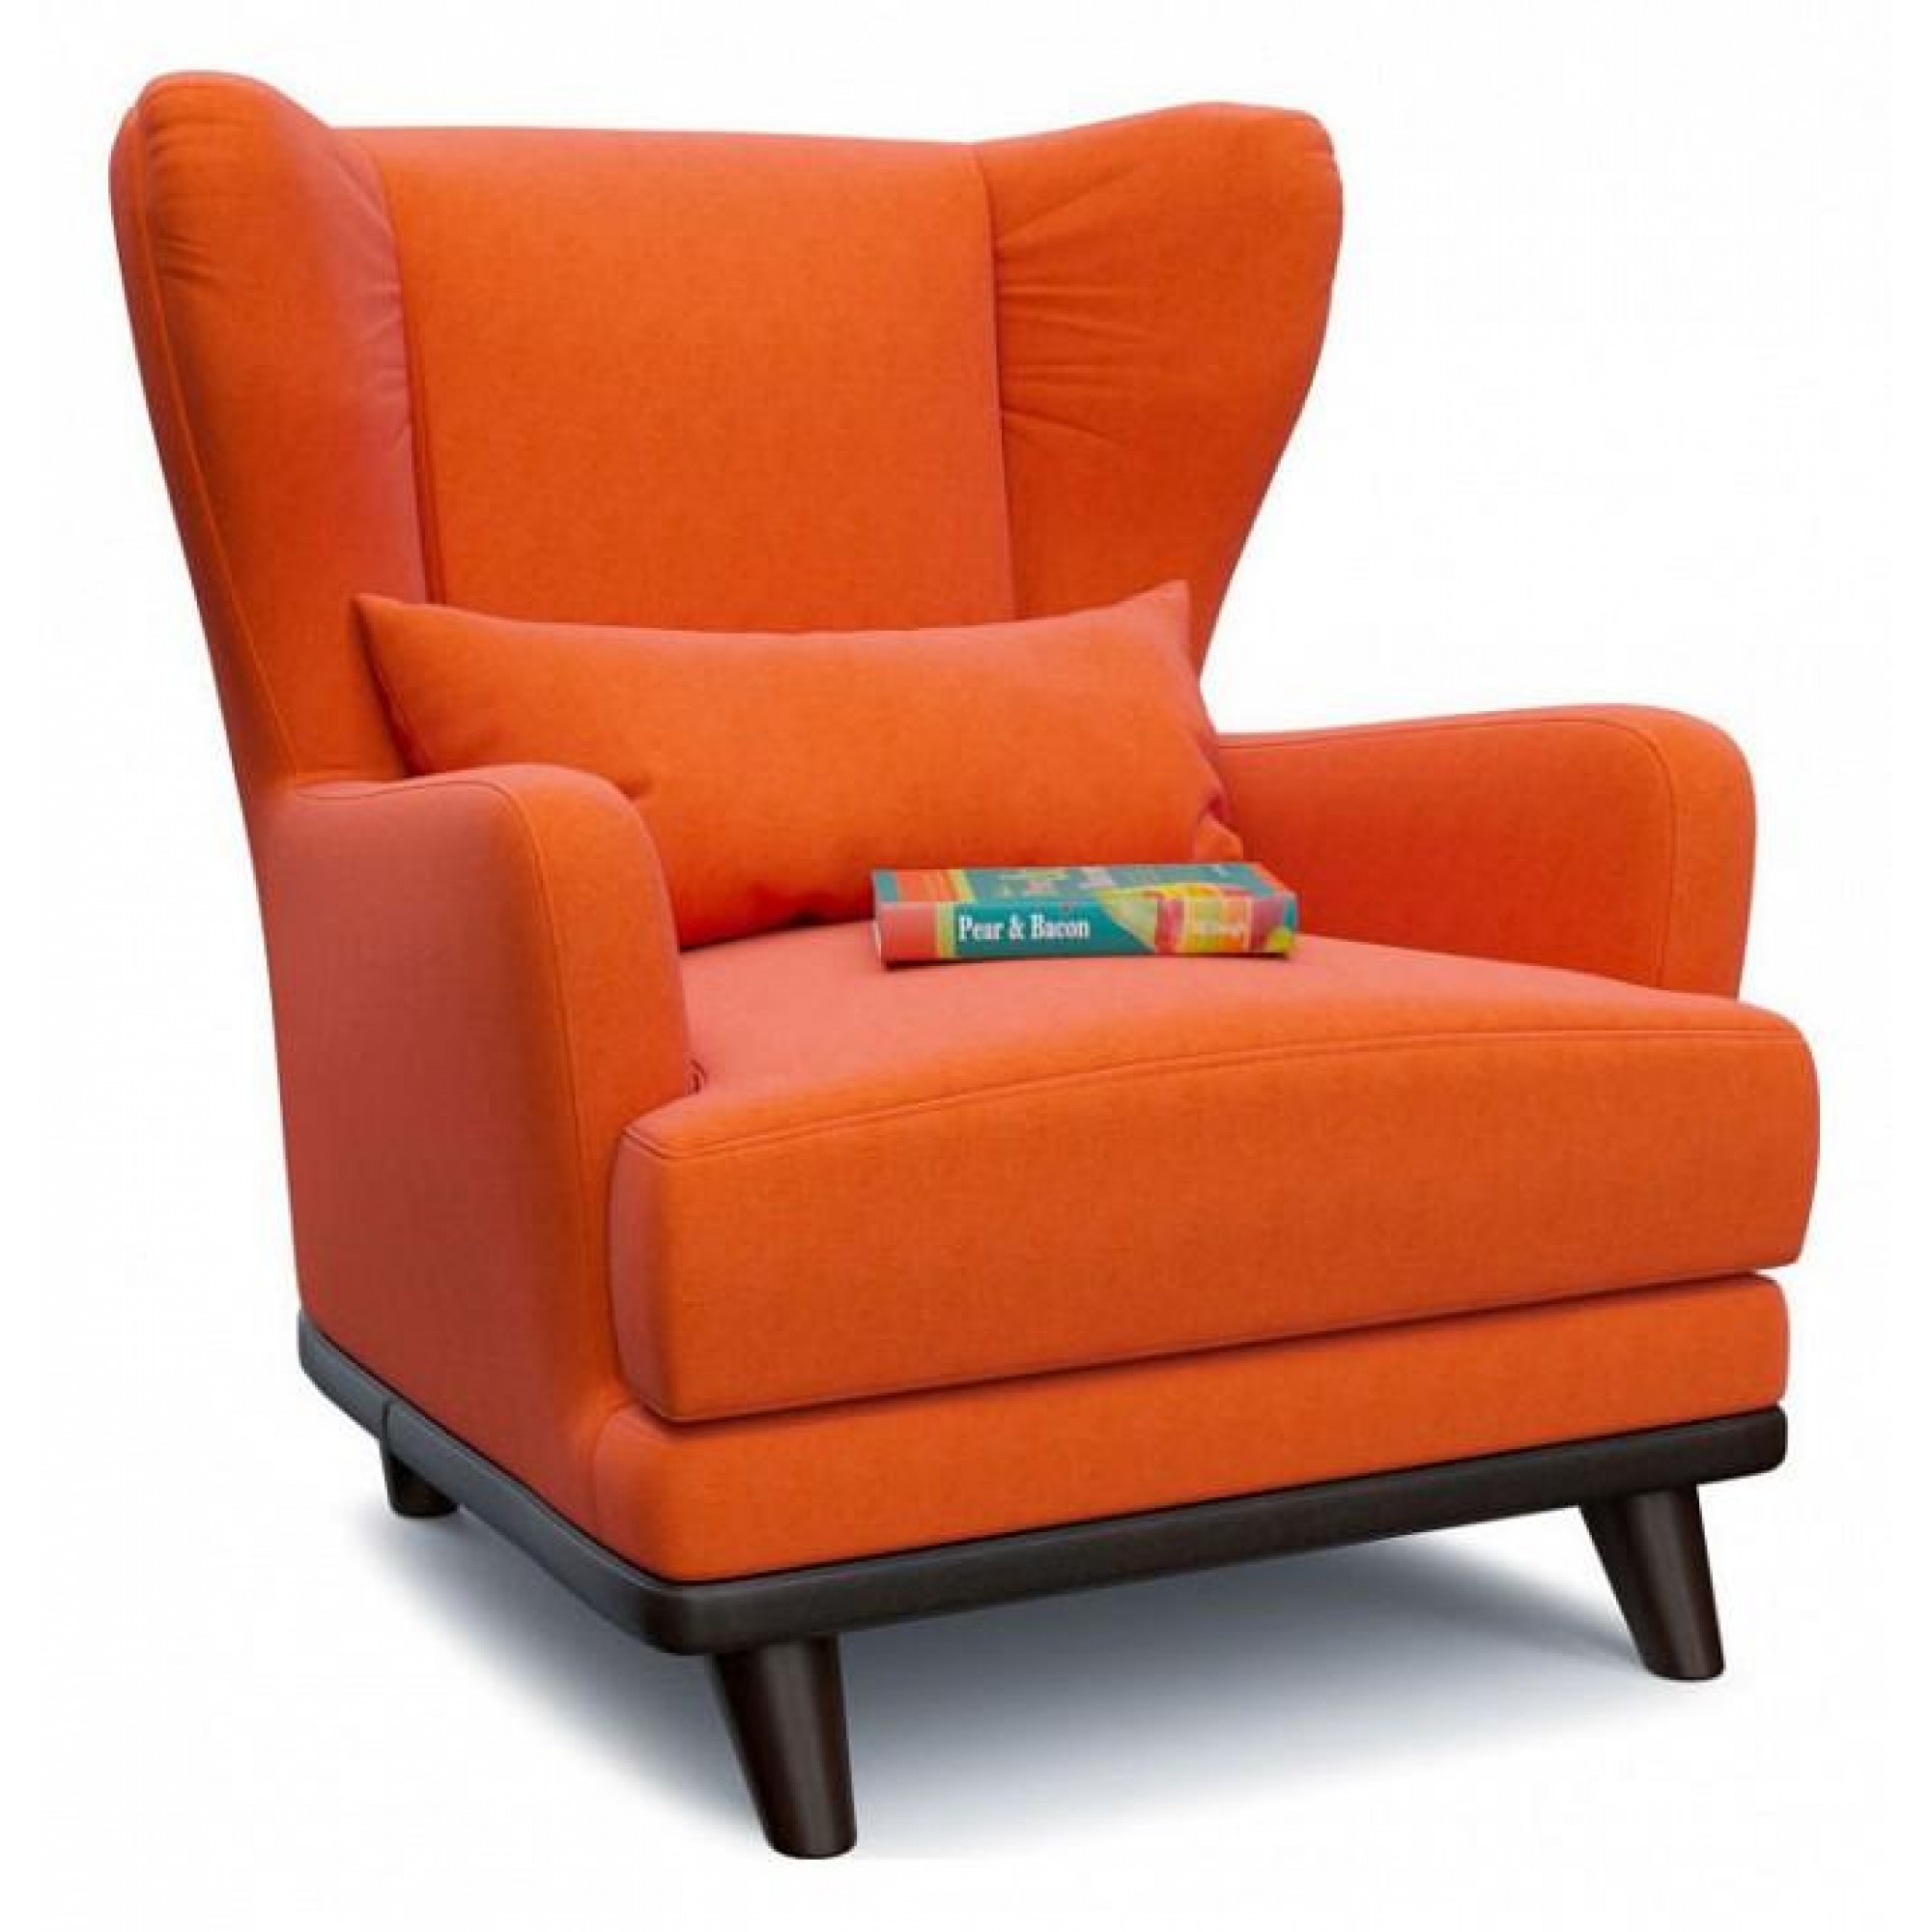 Кресло Оскар (Людвиг) оранжевый SMR_A1061454713